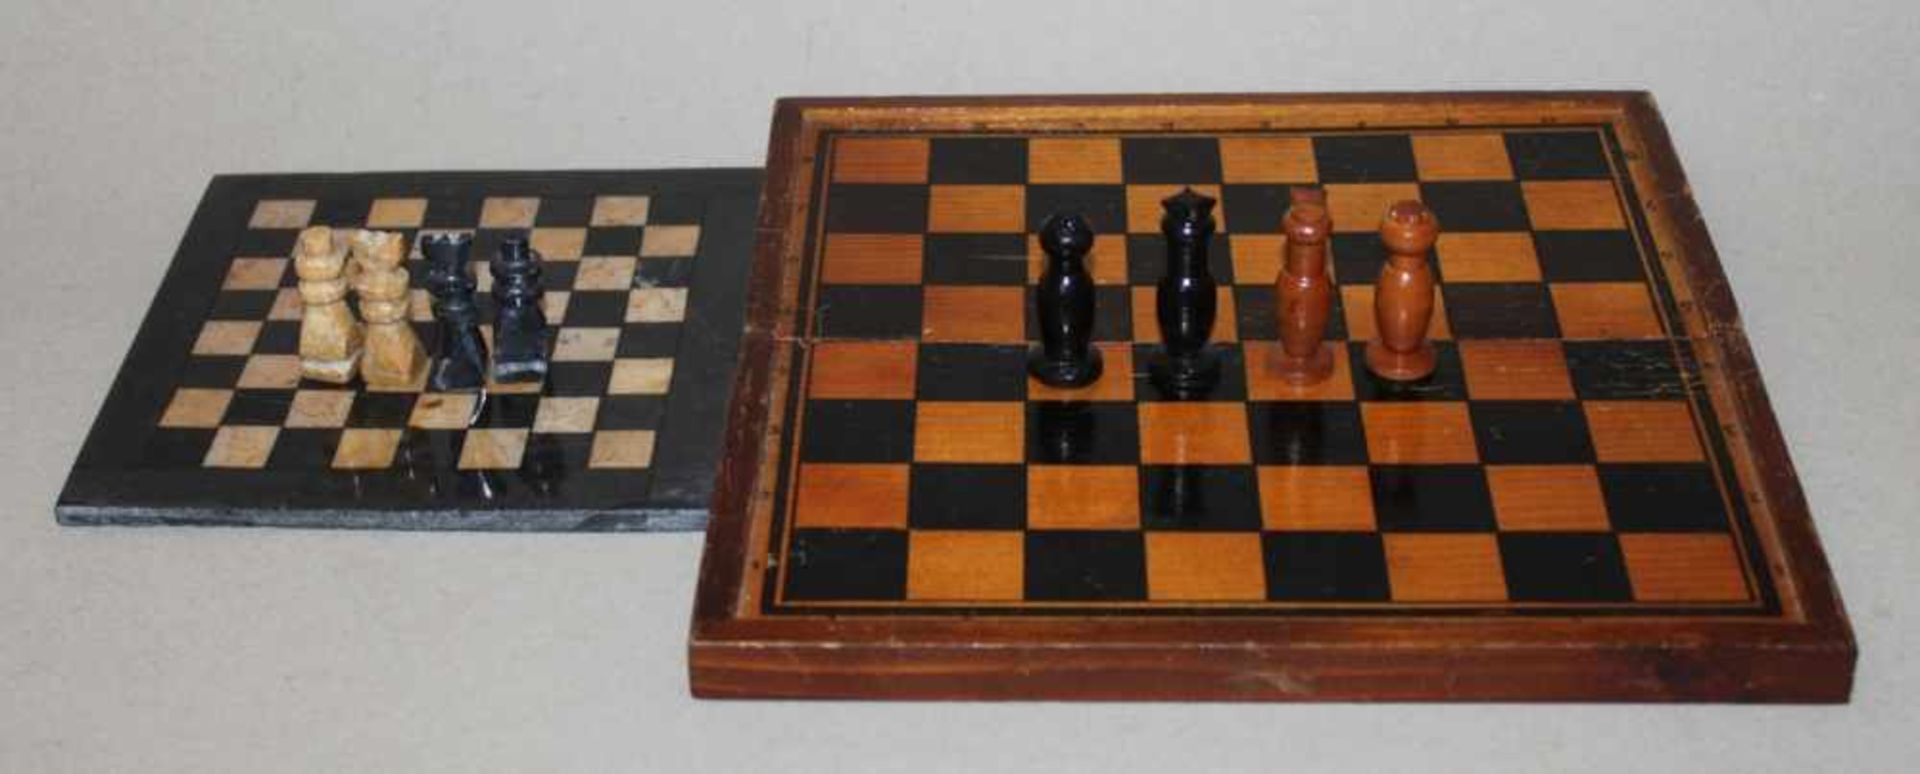 Afrika. Marokko. Schachspiel und Schachbrett aus Marmorim Kasten aus Holz. Die eine Partei in